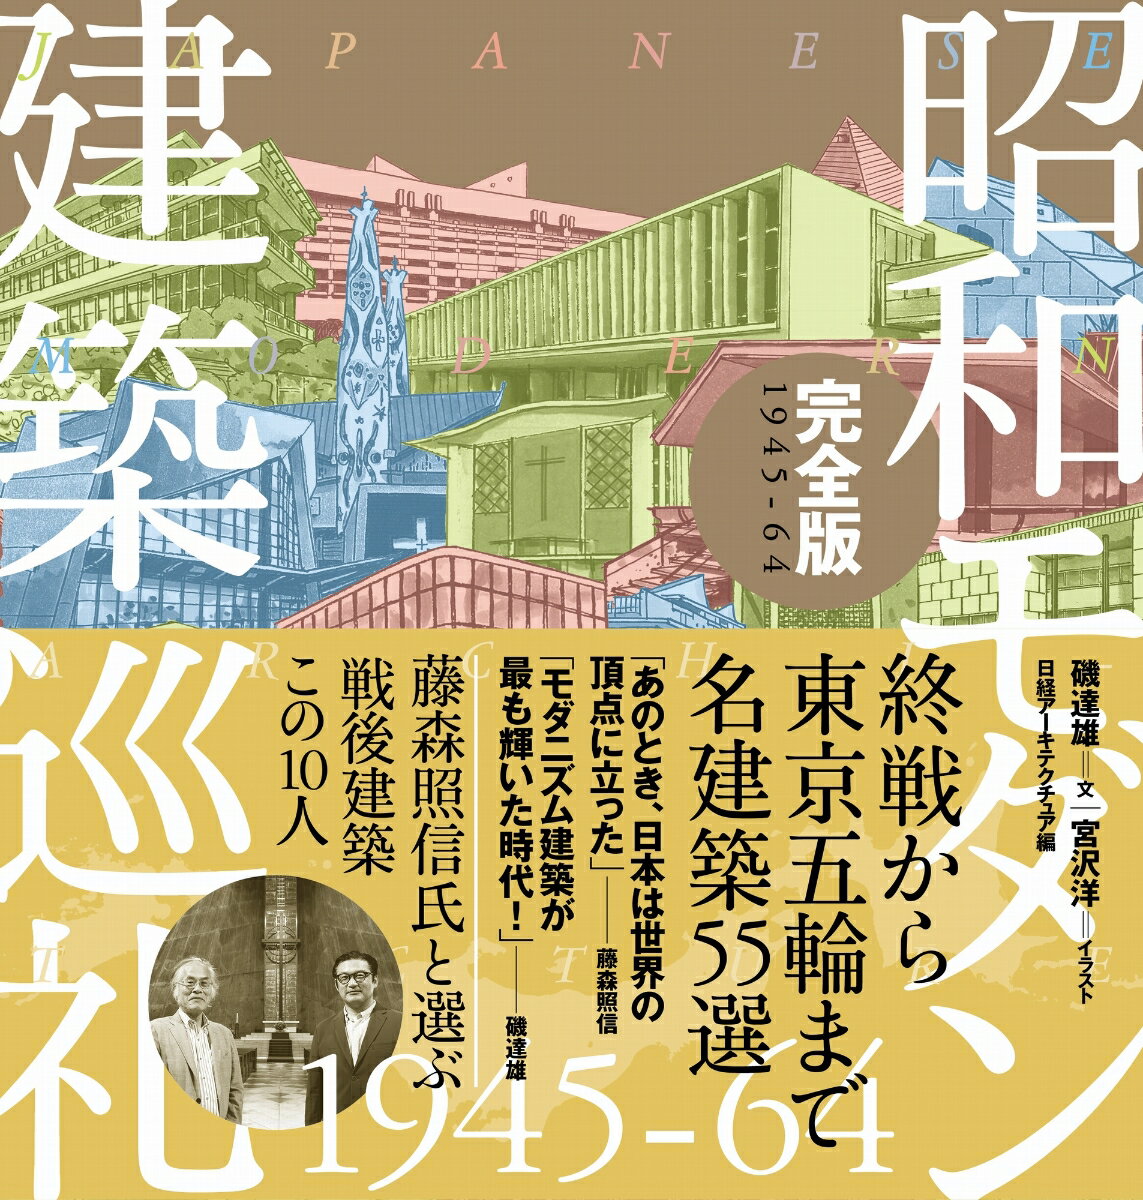 昭和モダン建築巡礼・完全版1945-64